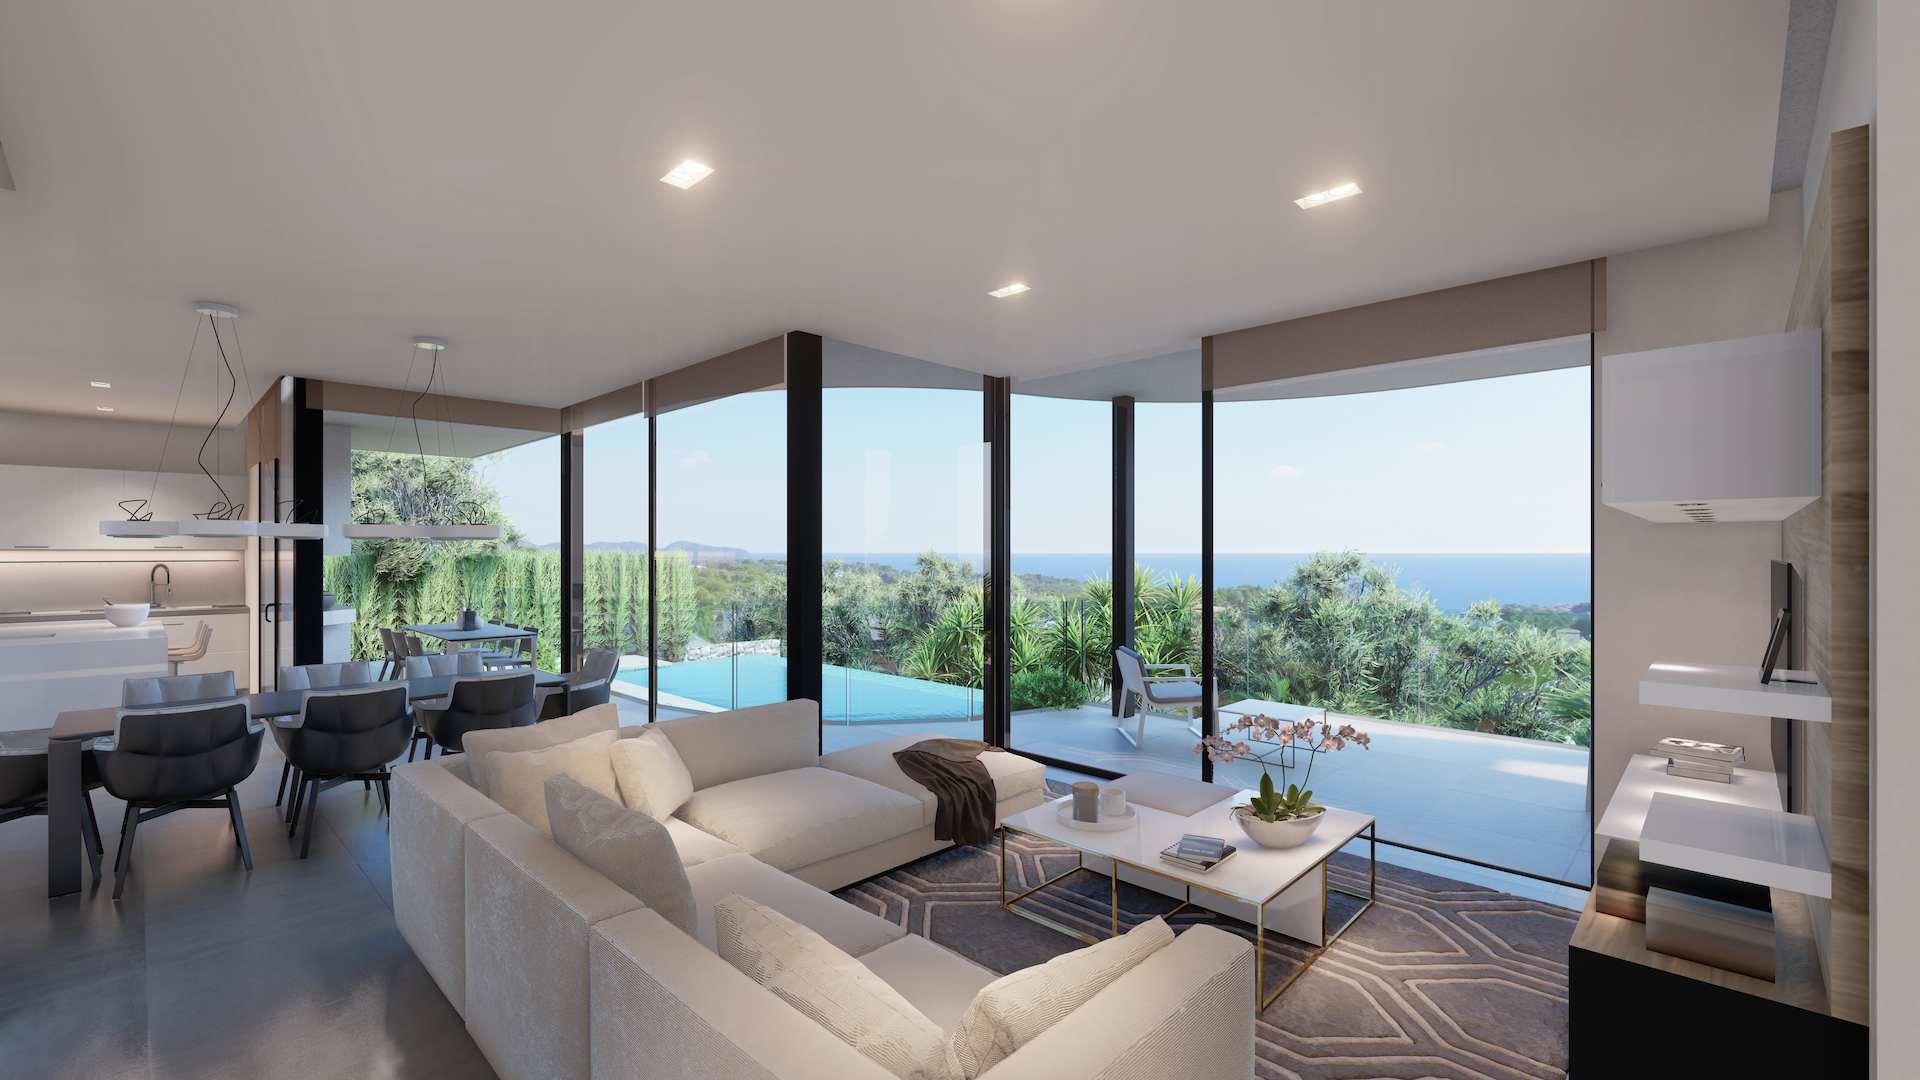 Increíble casa nueva y moderna con piscina infinita y vistas al mar